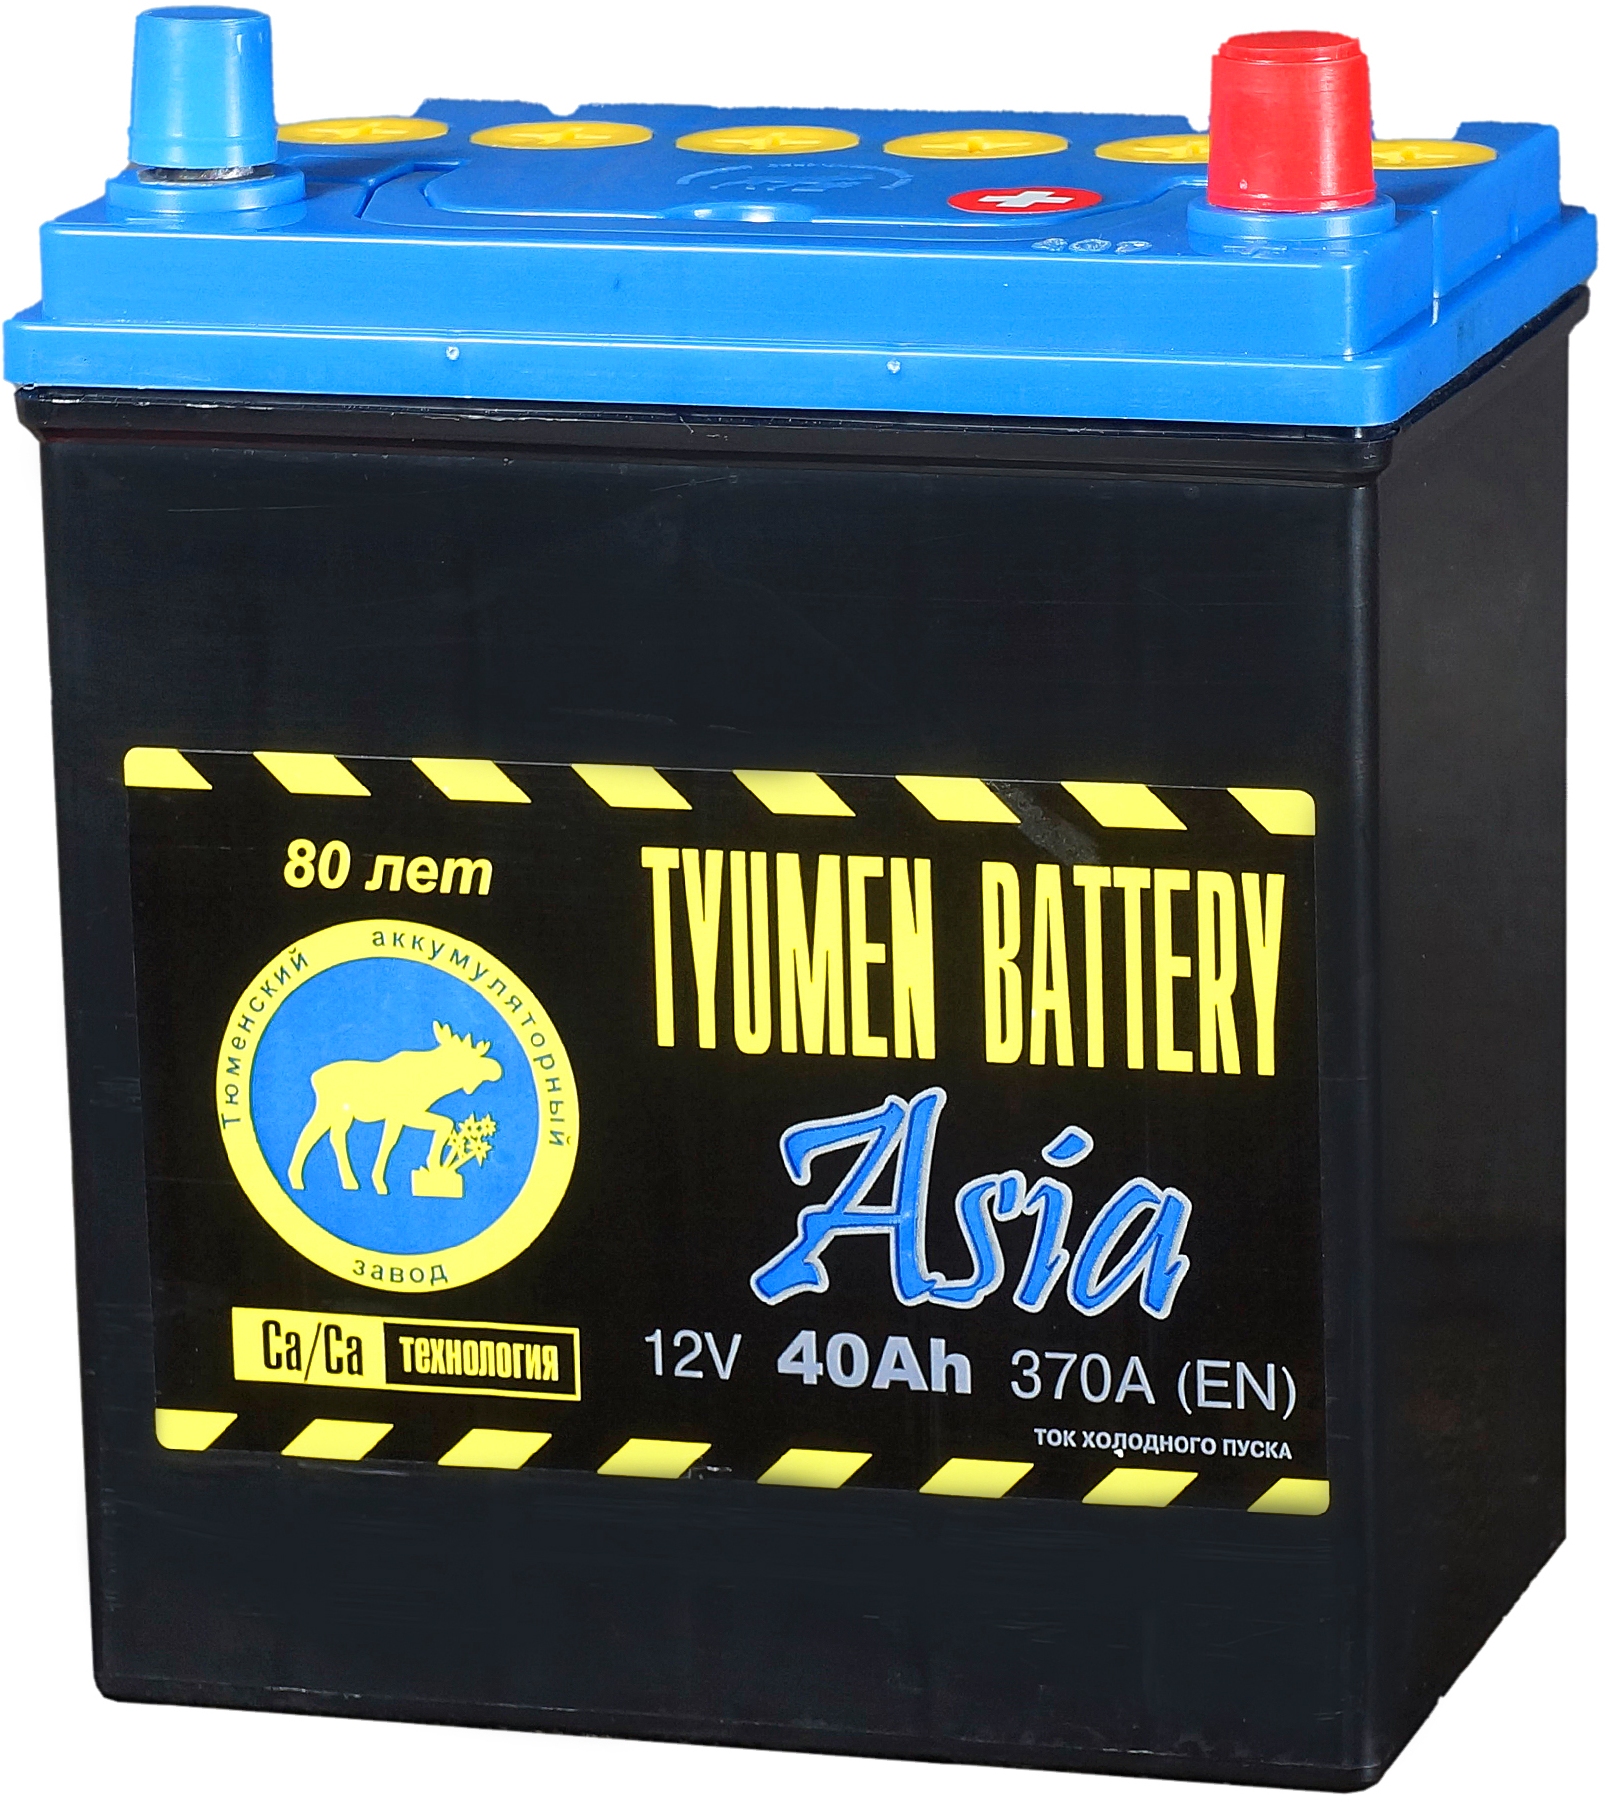 Аккумуляторы tyumen asia. Аккумулятор Tyumen Battery. Tyumen Battery вся линейка аккумуляторов. Пусковой АКБ nke 1658044369. Аккумулятор Tyumen Battery Standard 215 а*ч.